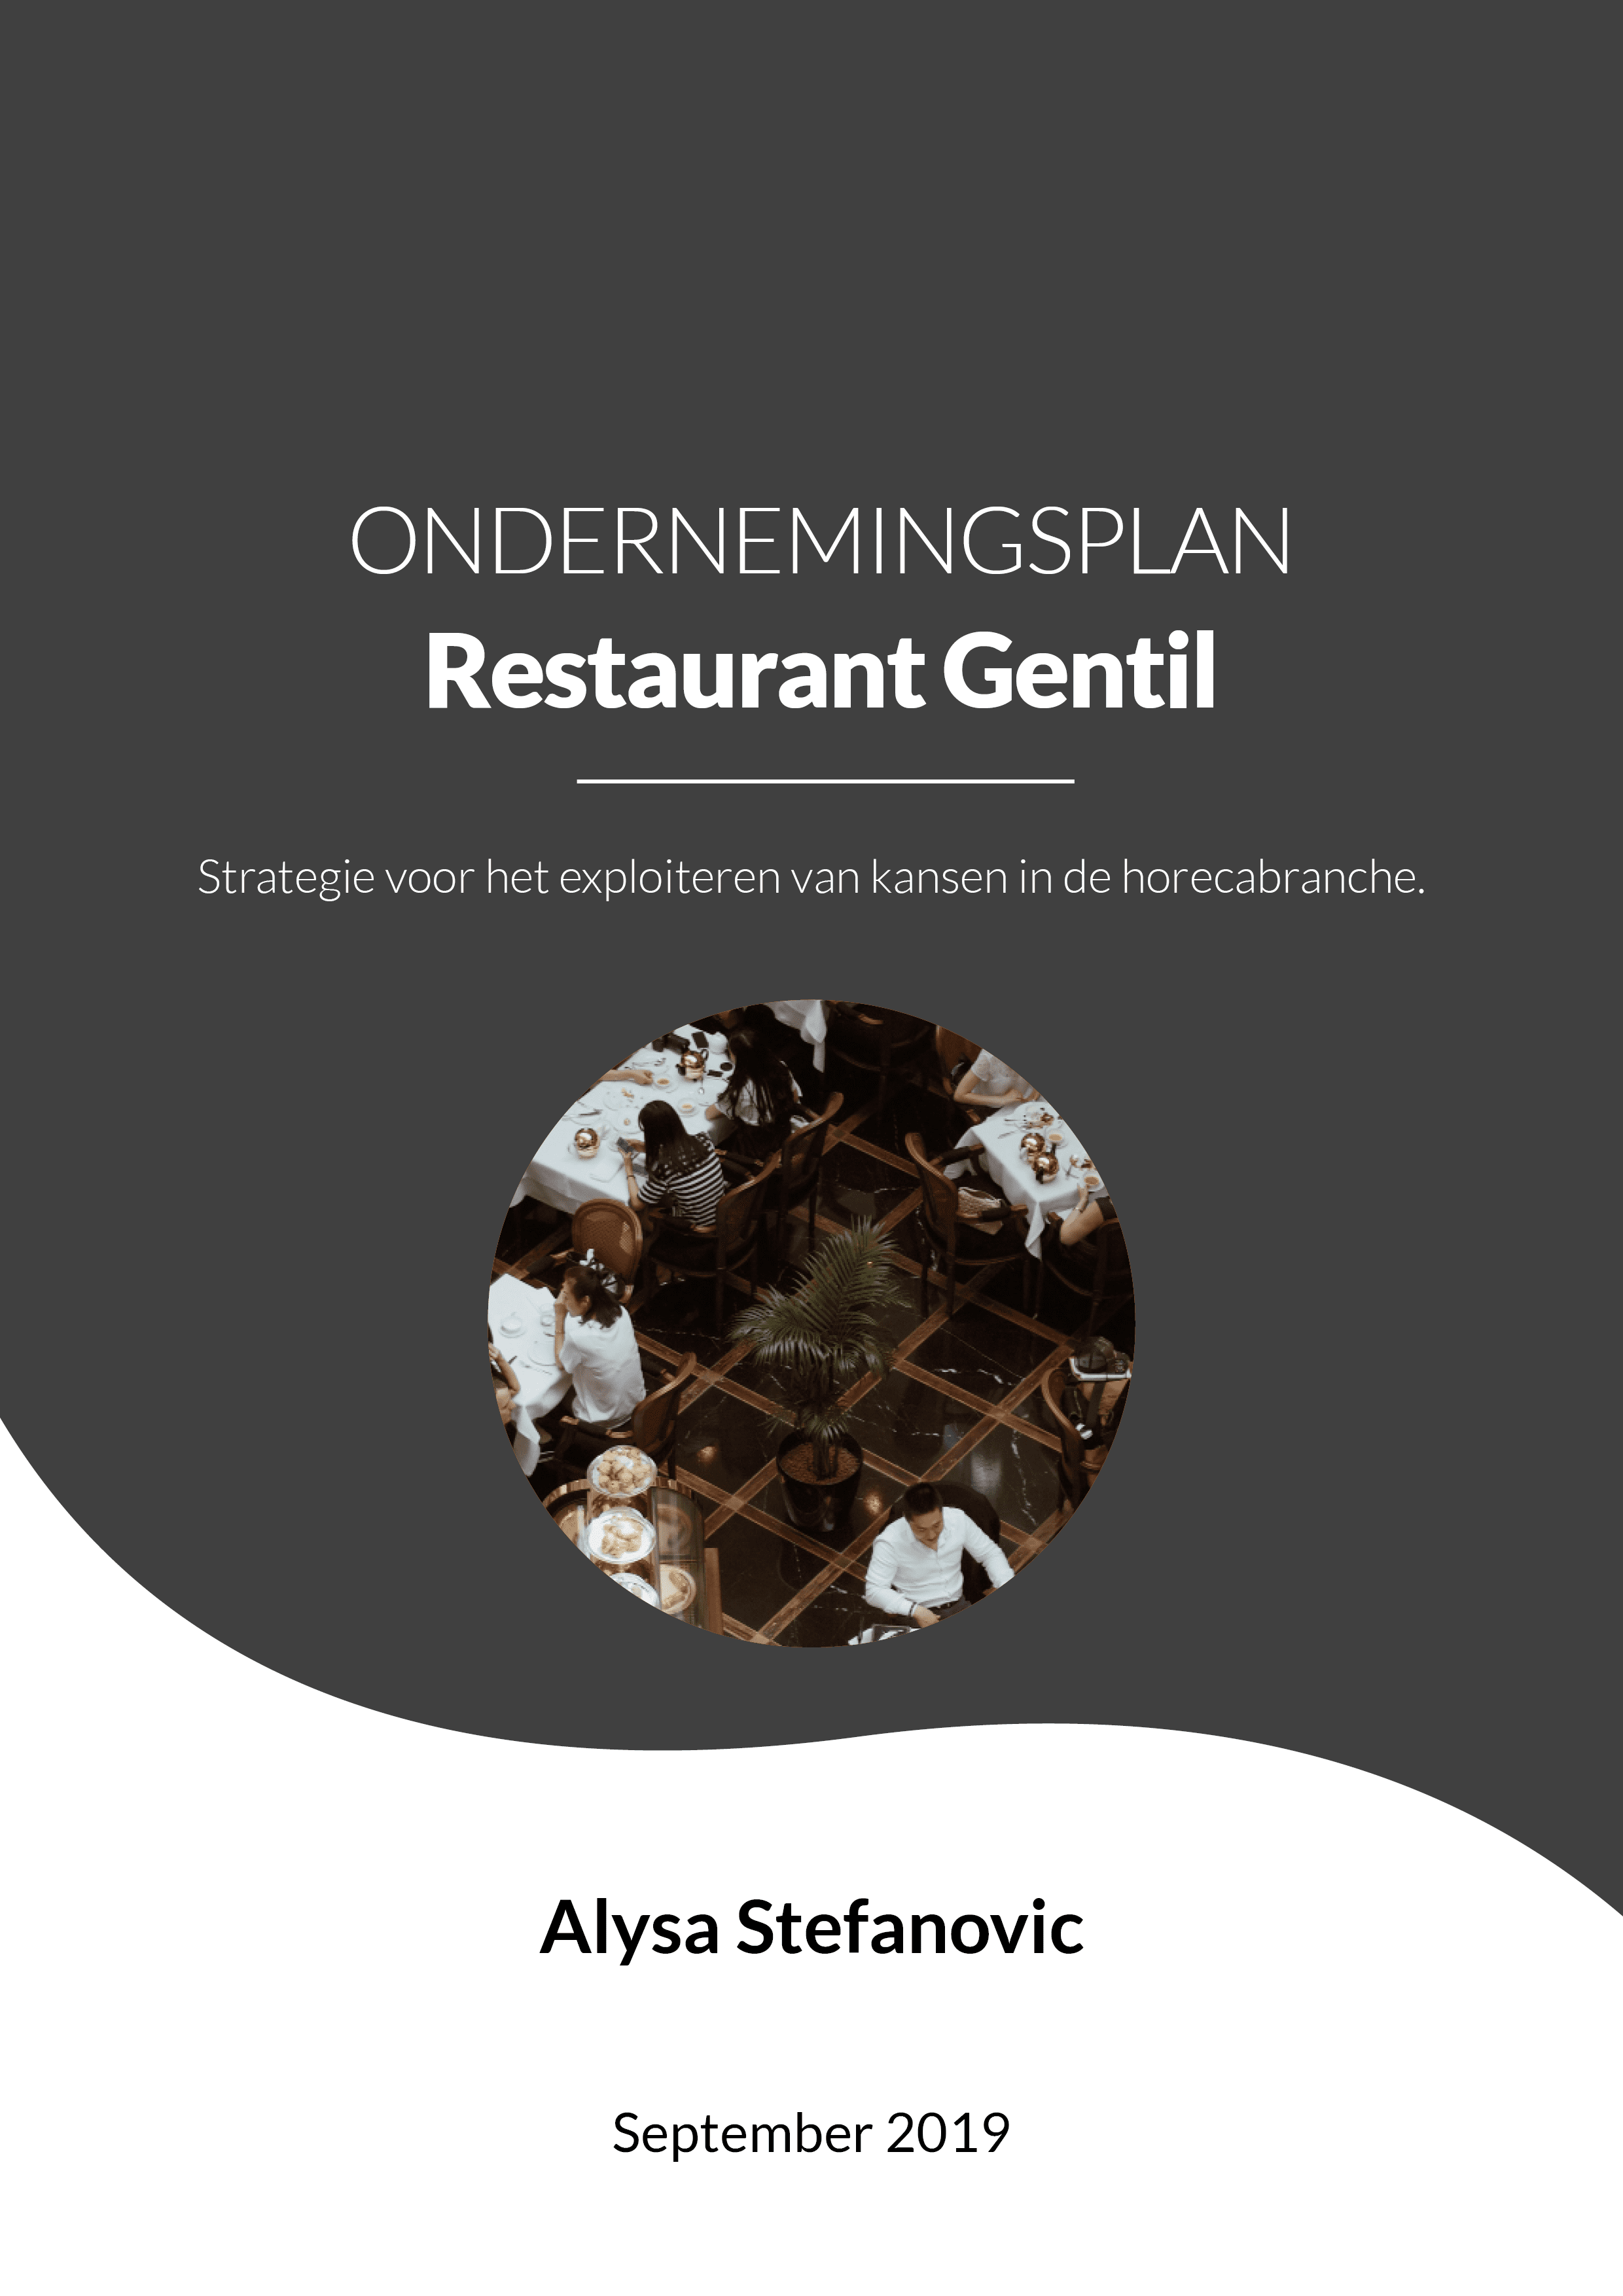 Ondernemersplan restaurant